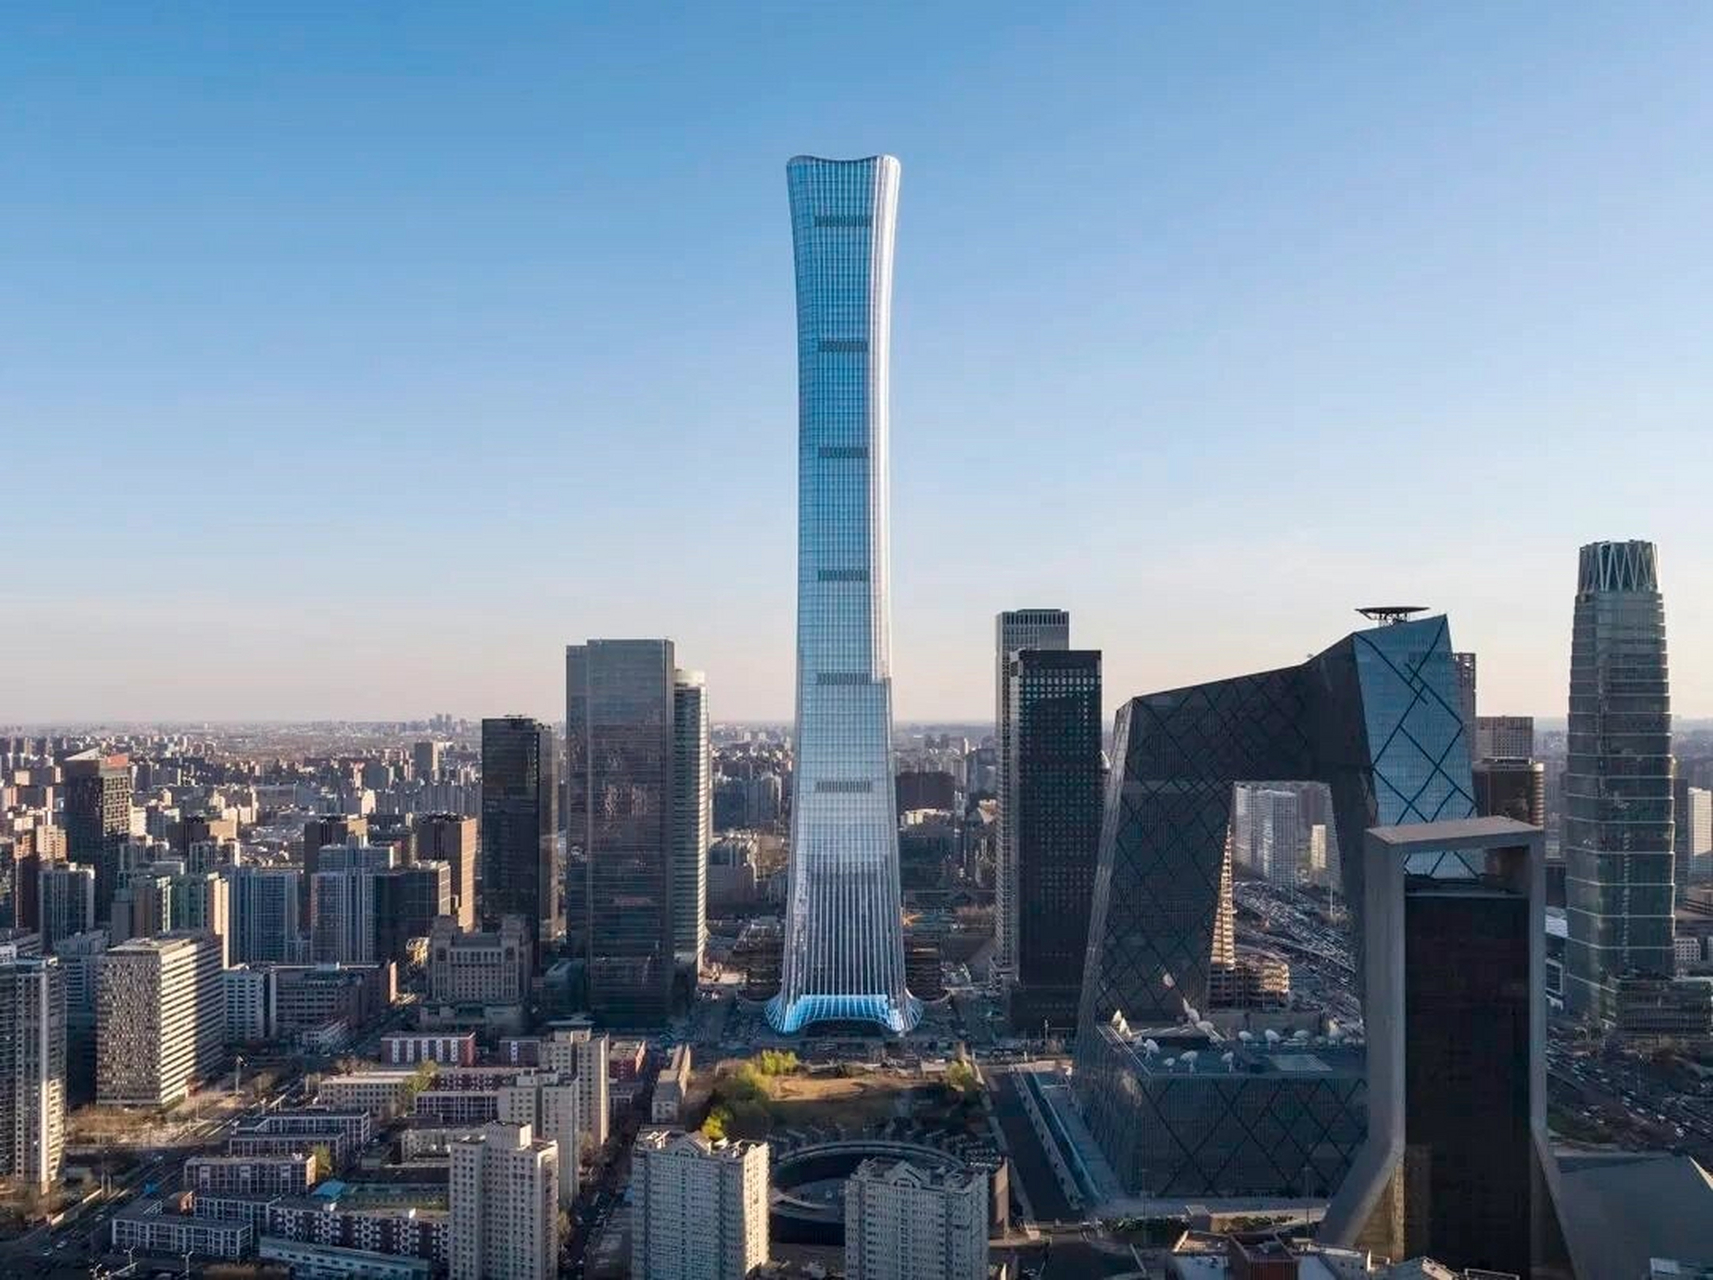 528米,北京第一高楼 中国尊中信大厦的设计灵感来自尊,这是一种起